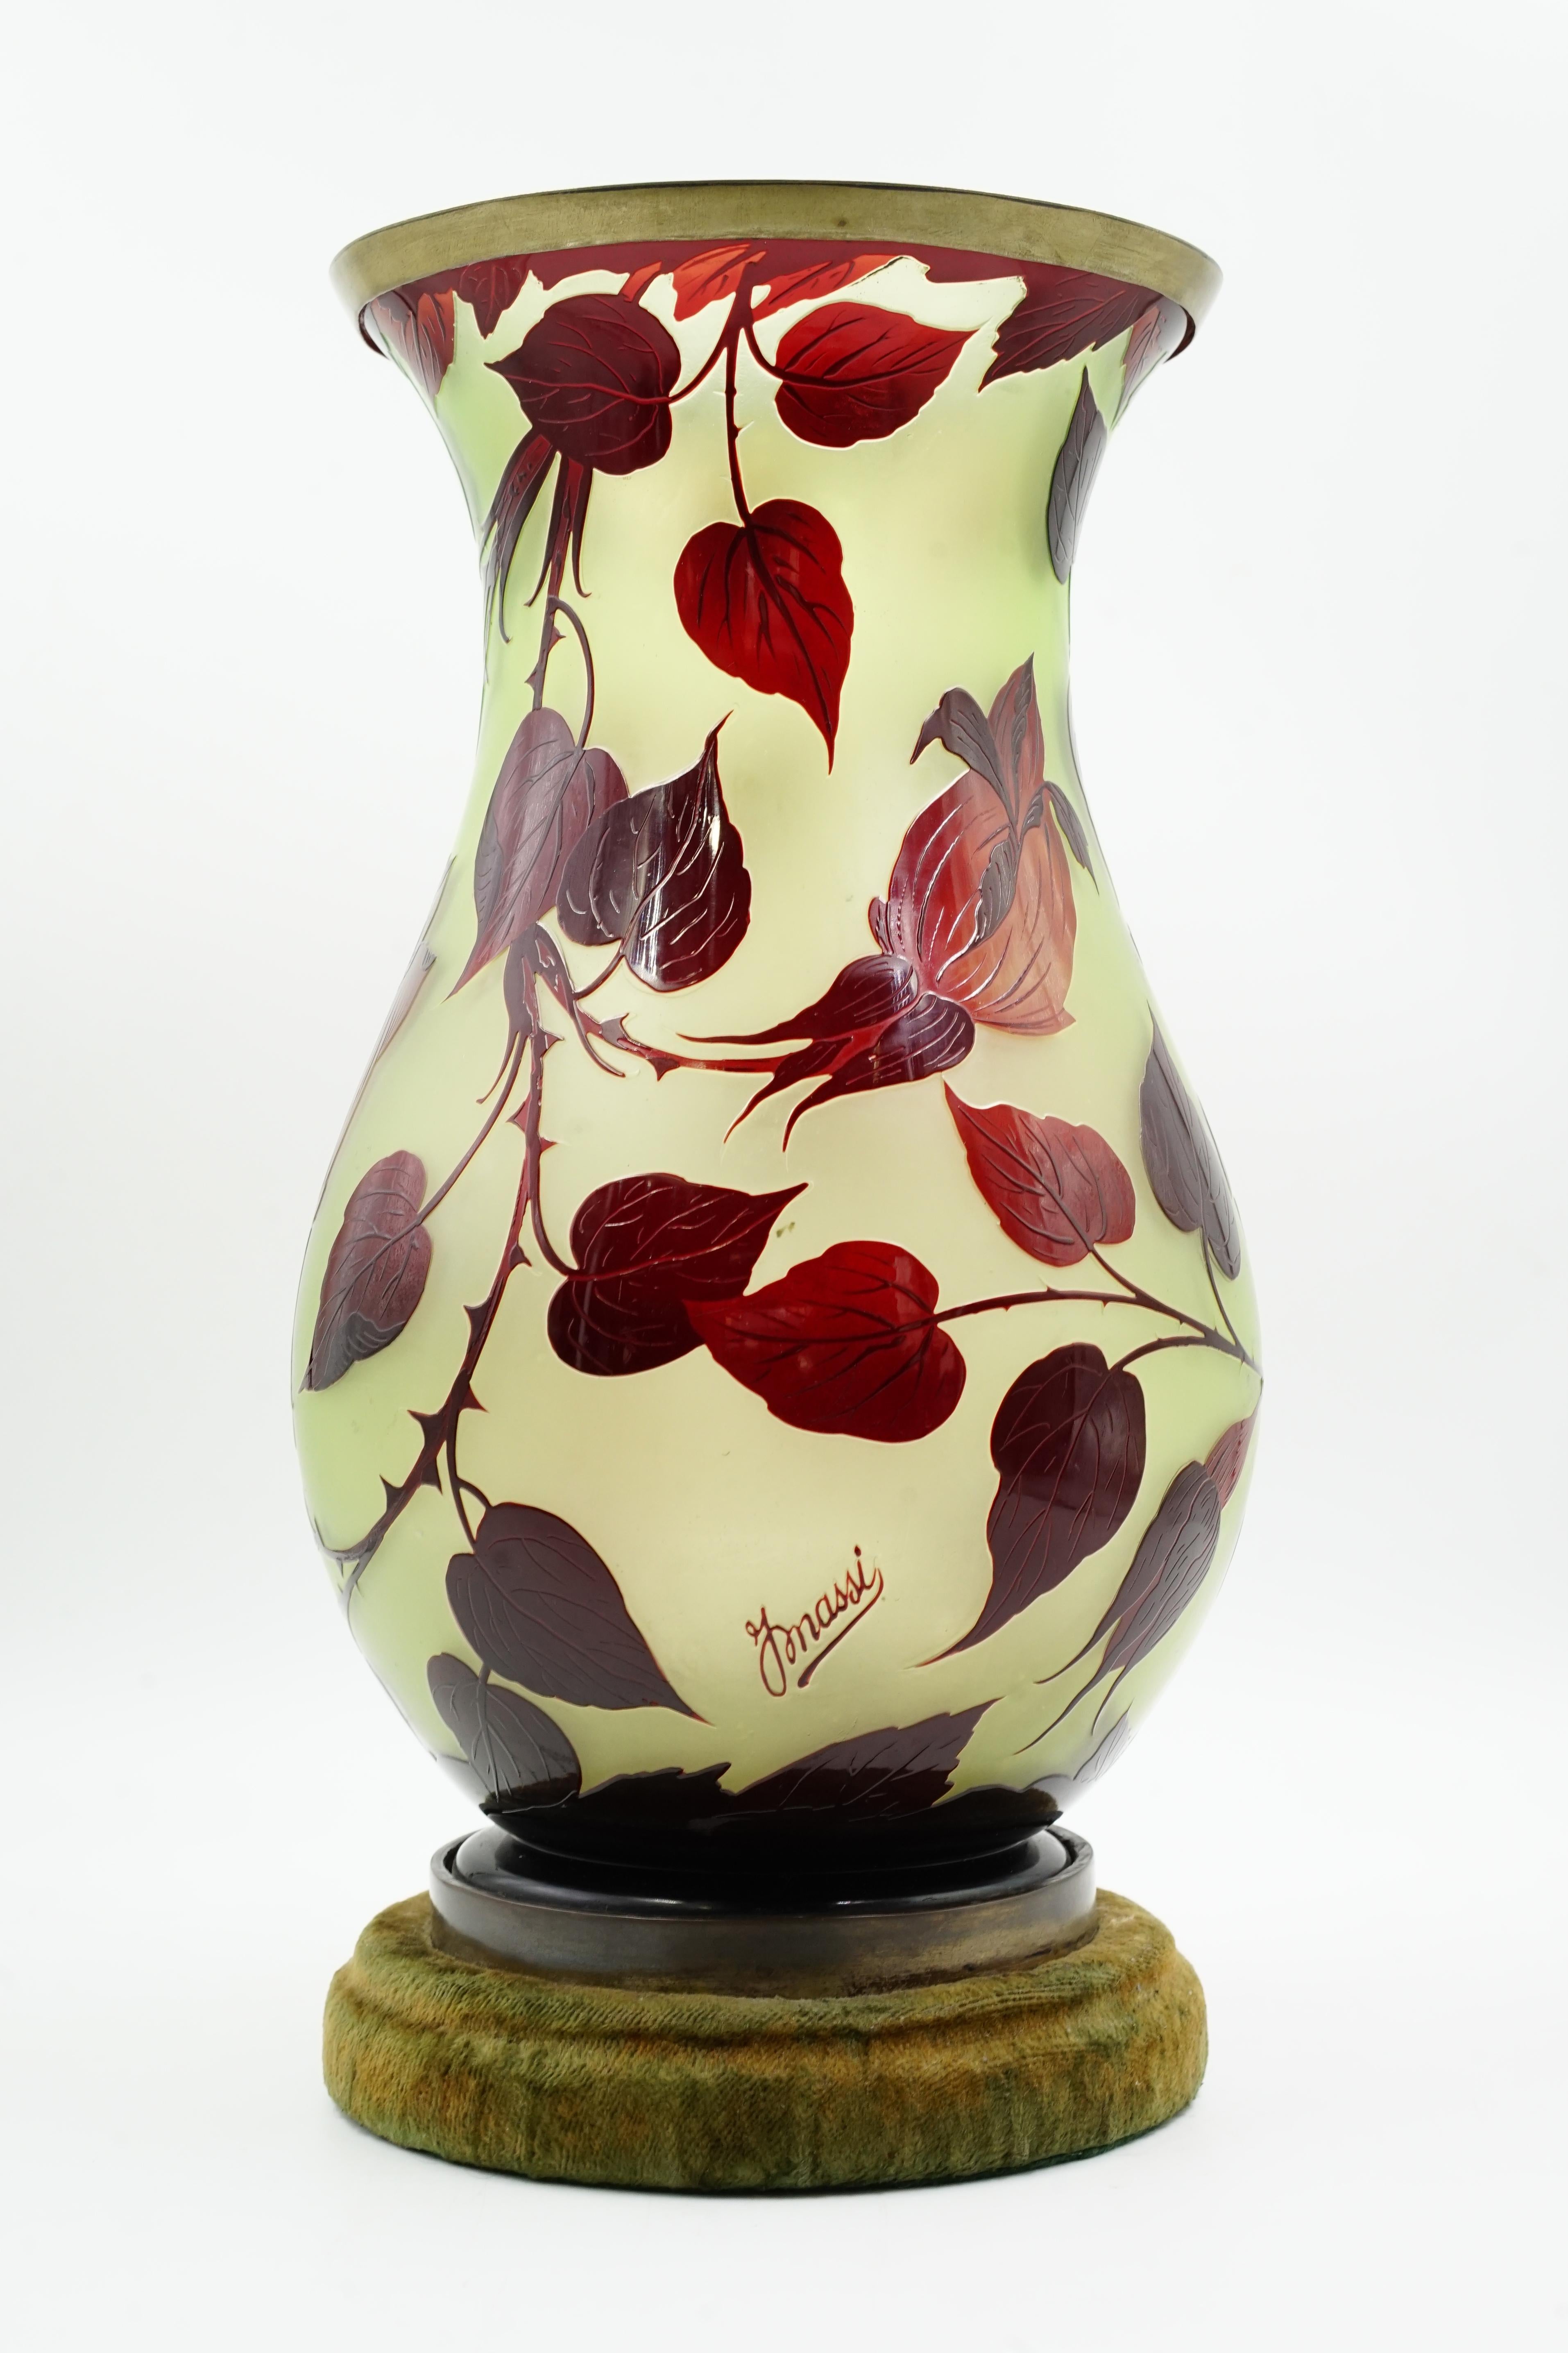 Rare Loetz Art nouveau glass For Sale 1